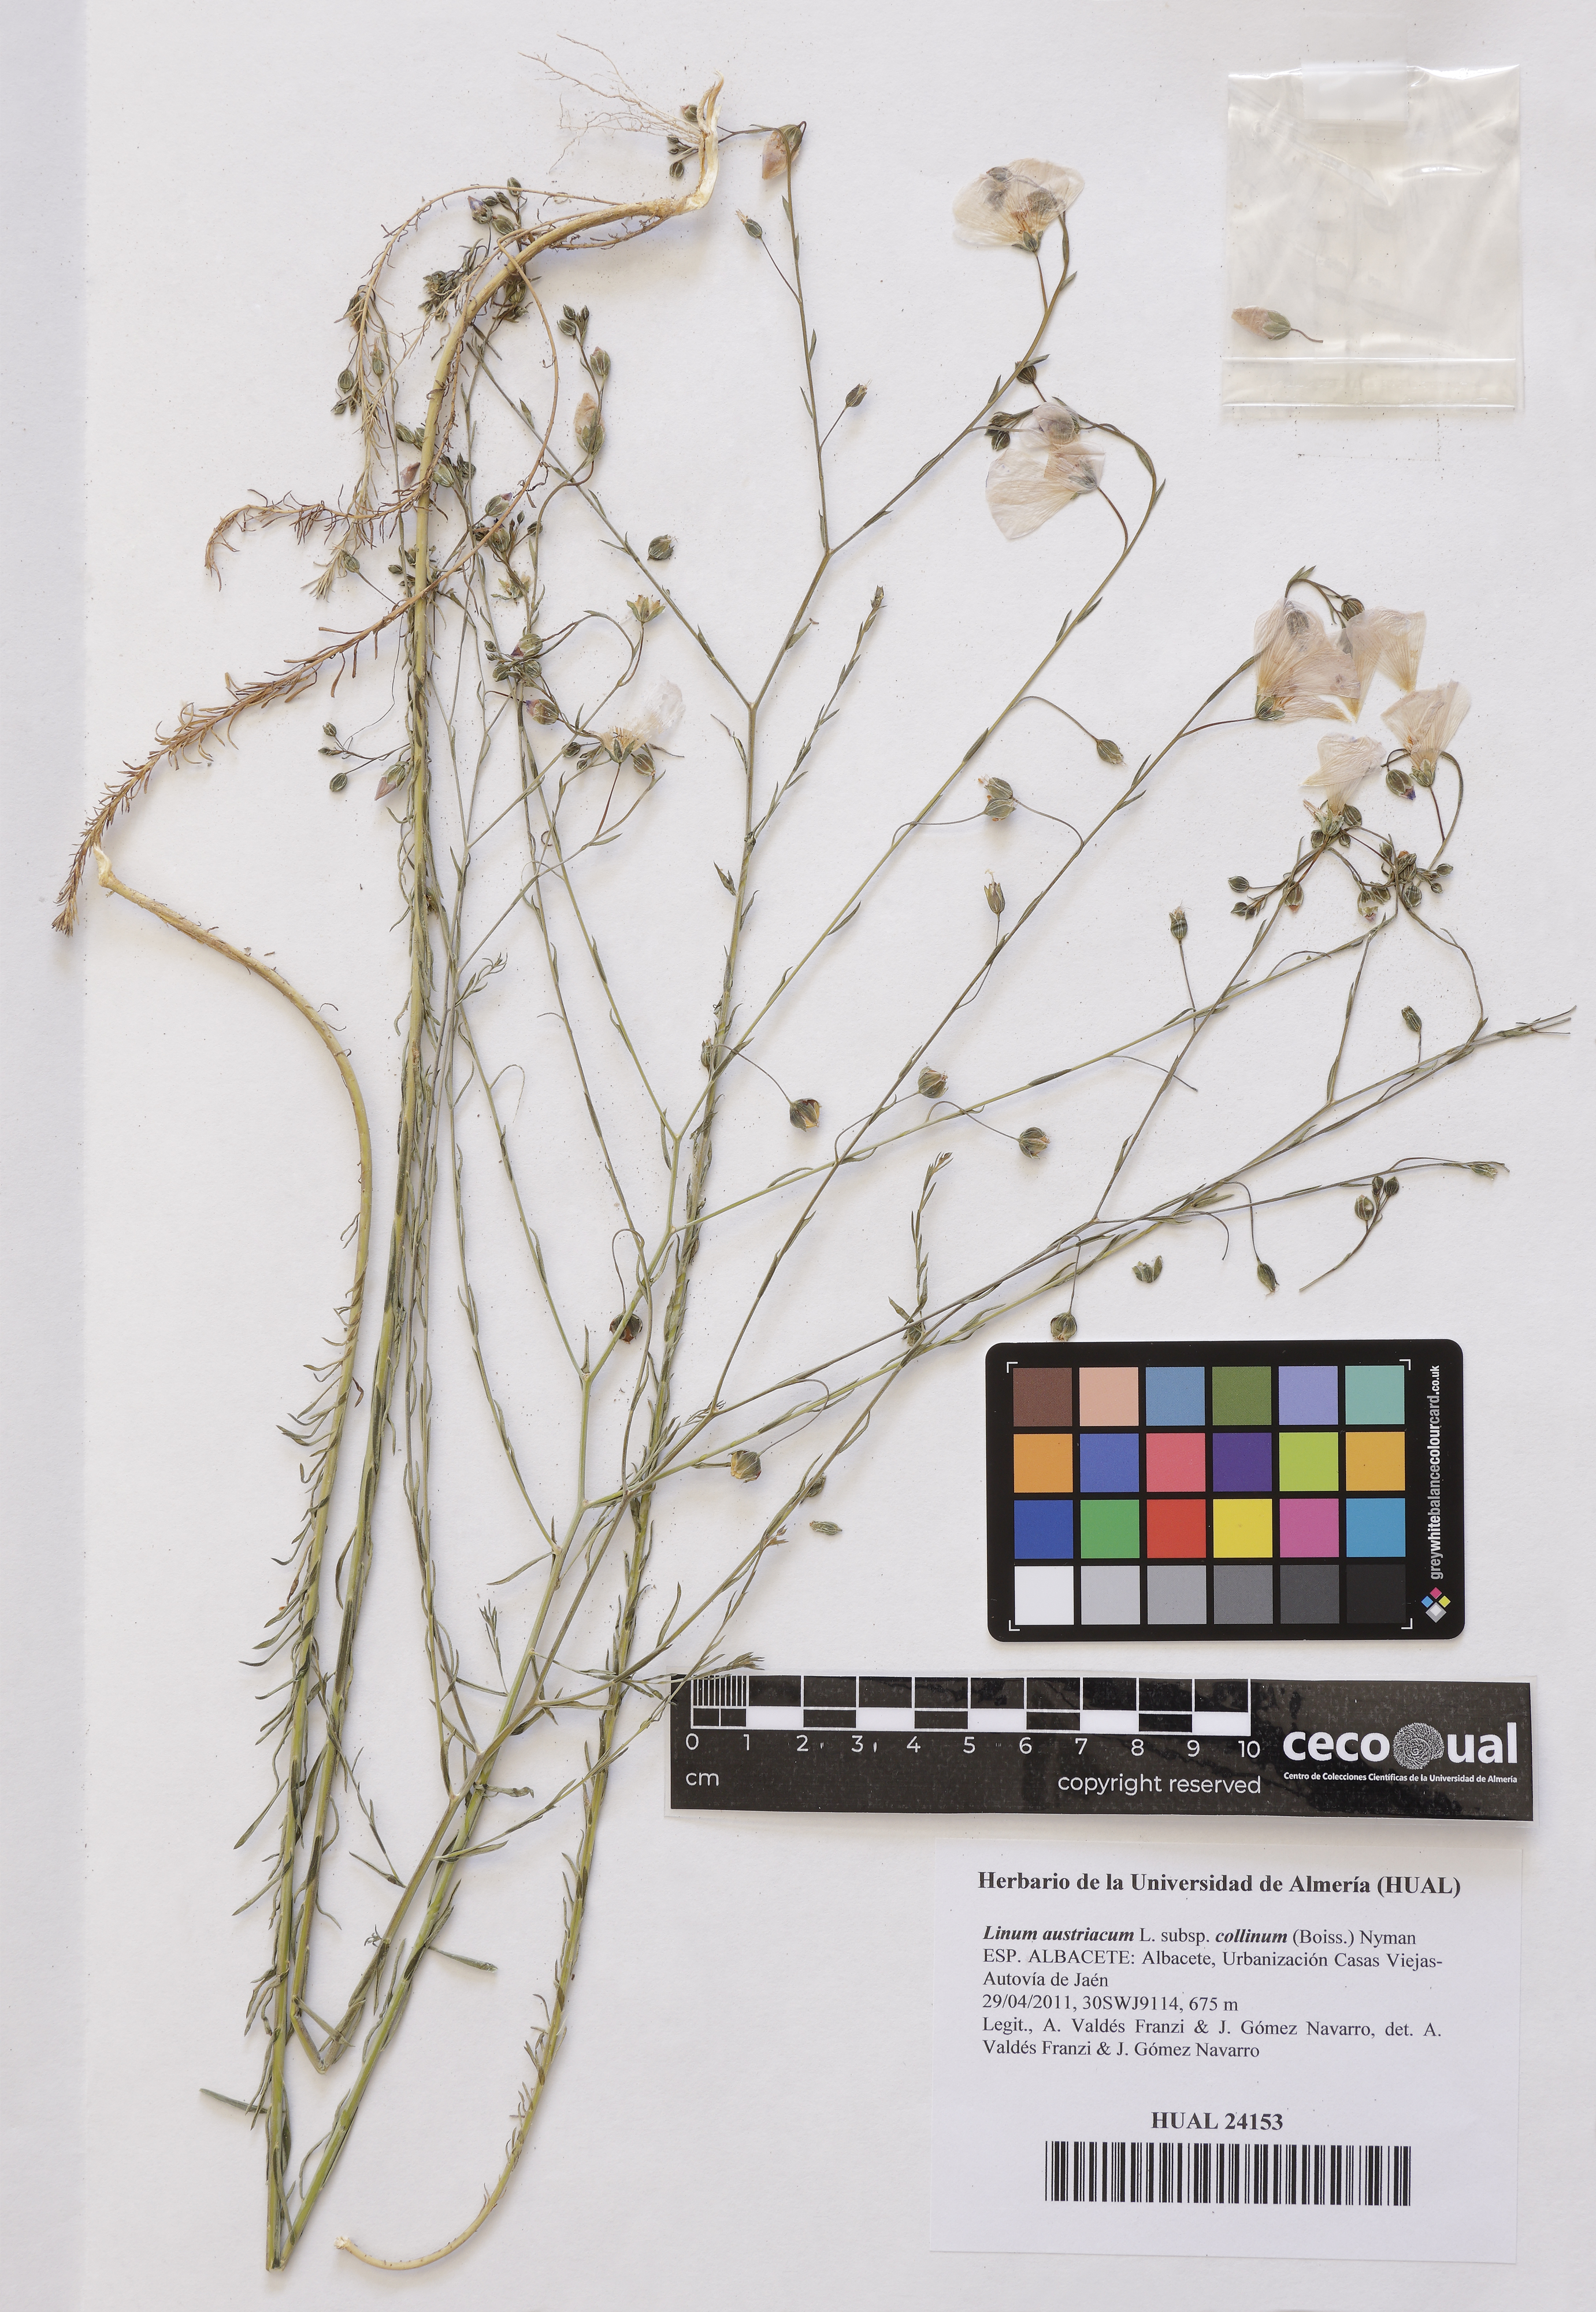 Linum austriacum (L.) subsp. collinum (Boiss.) Nyman